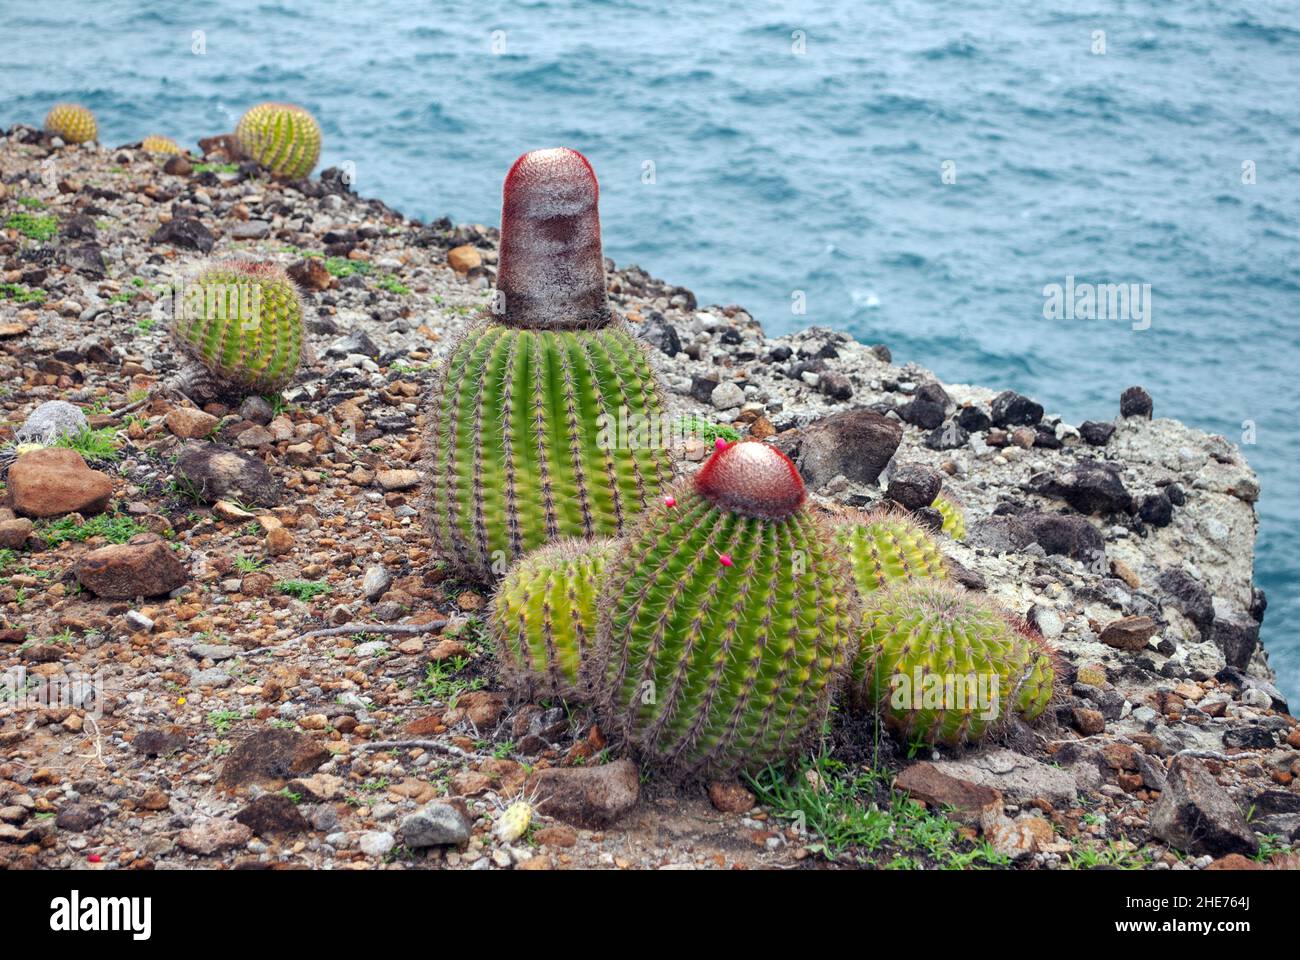 Melocactus intortus est une espèce commune de cactus des Caraïbes.Les photos ont été prises sur Sainte-Lucie. Banque D'Images